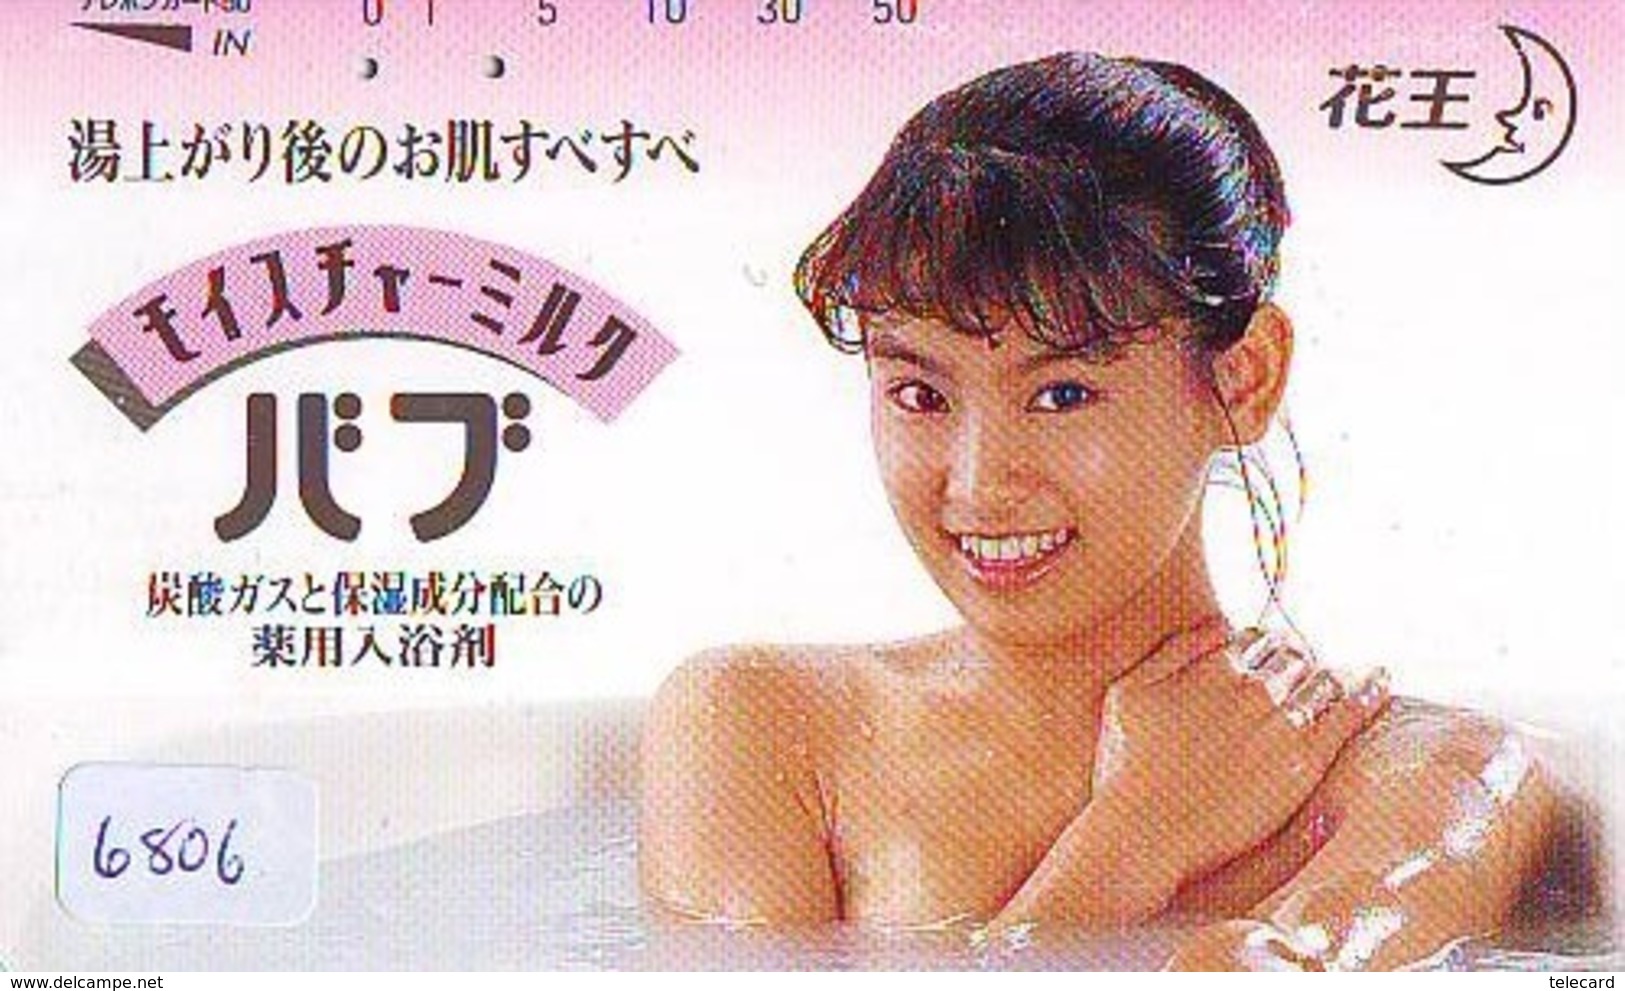 Télécarte Japon * EROTIQUE (6806) DANS LA BAIN *  EROTIC PHONECARD JAPAN * TK * BATHCLOTHES * FEMME SEXY LADY LINGERIE - Moda